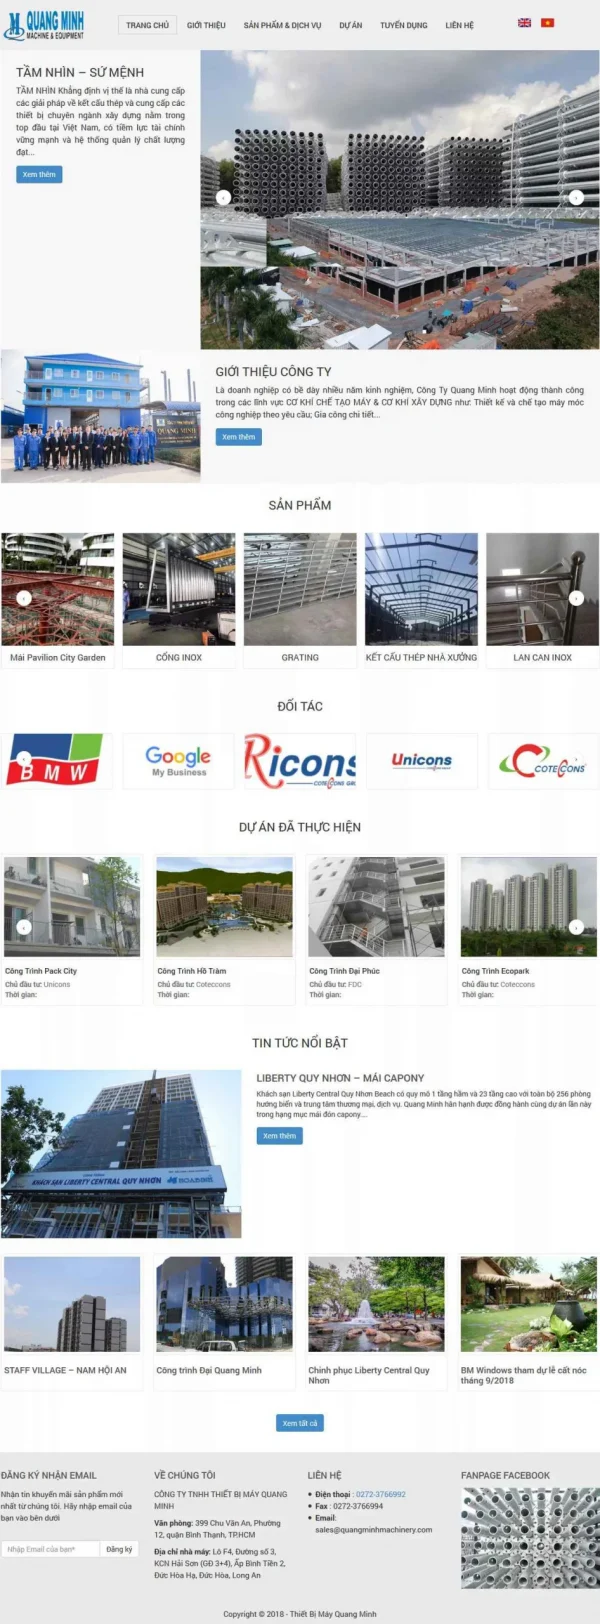 Mẫu giao diện website cơ khí công ty Quang Minh